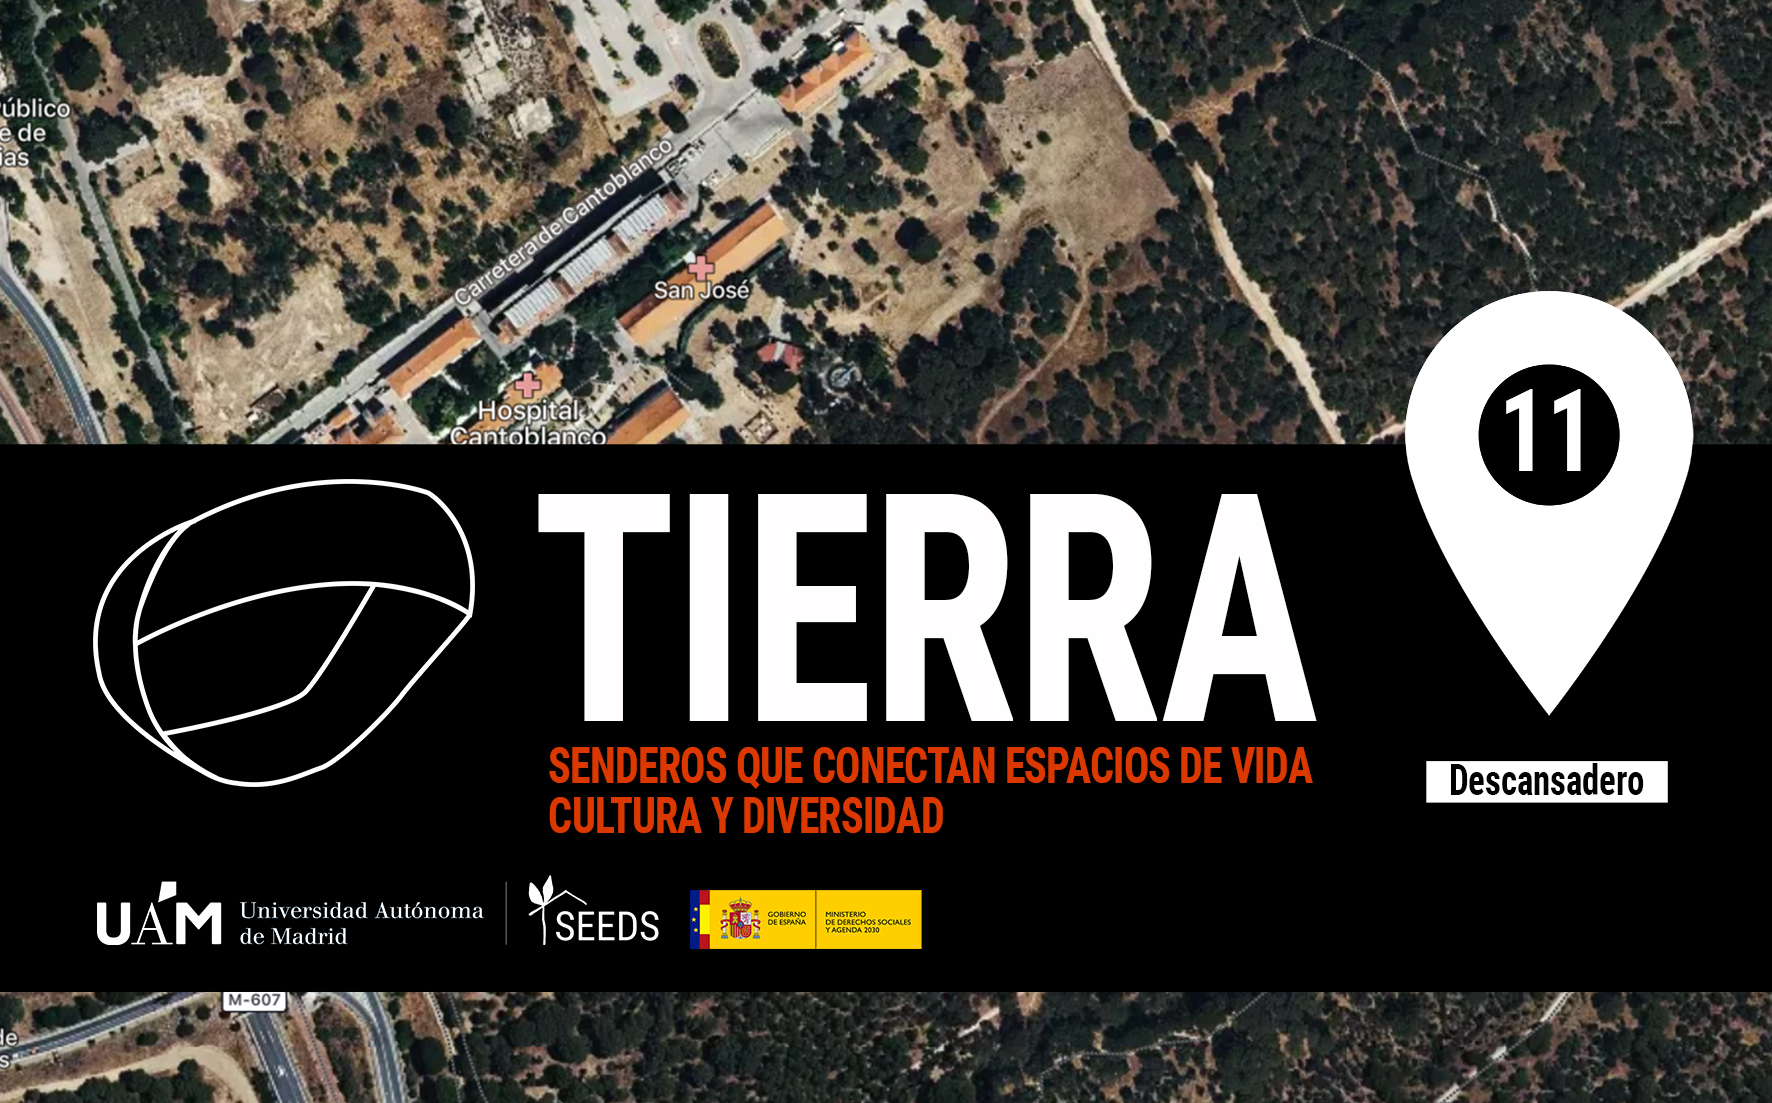 TIERRA: Descansadero 11_Senderos que conectan vida cultura diversidad